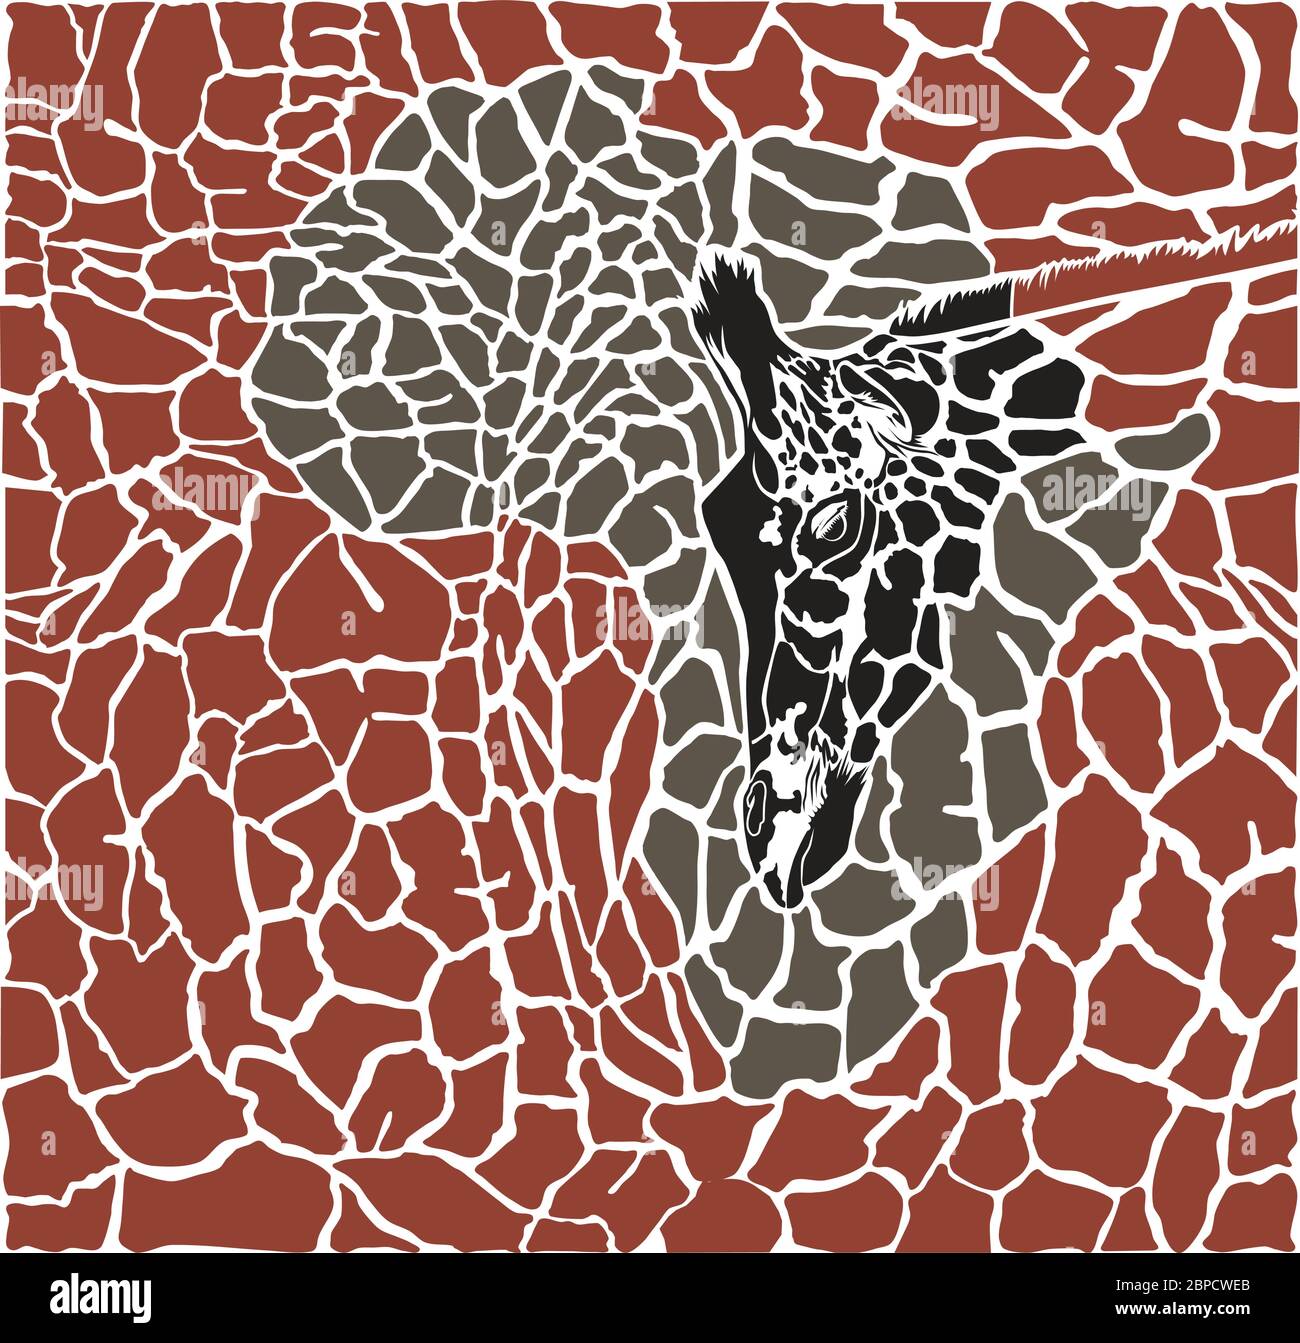 Contexte avec les girafes et le continent africain Illustration de Vecteur